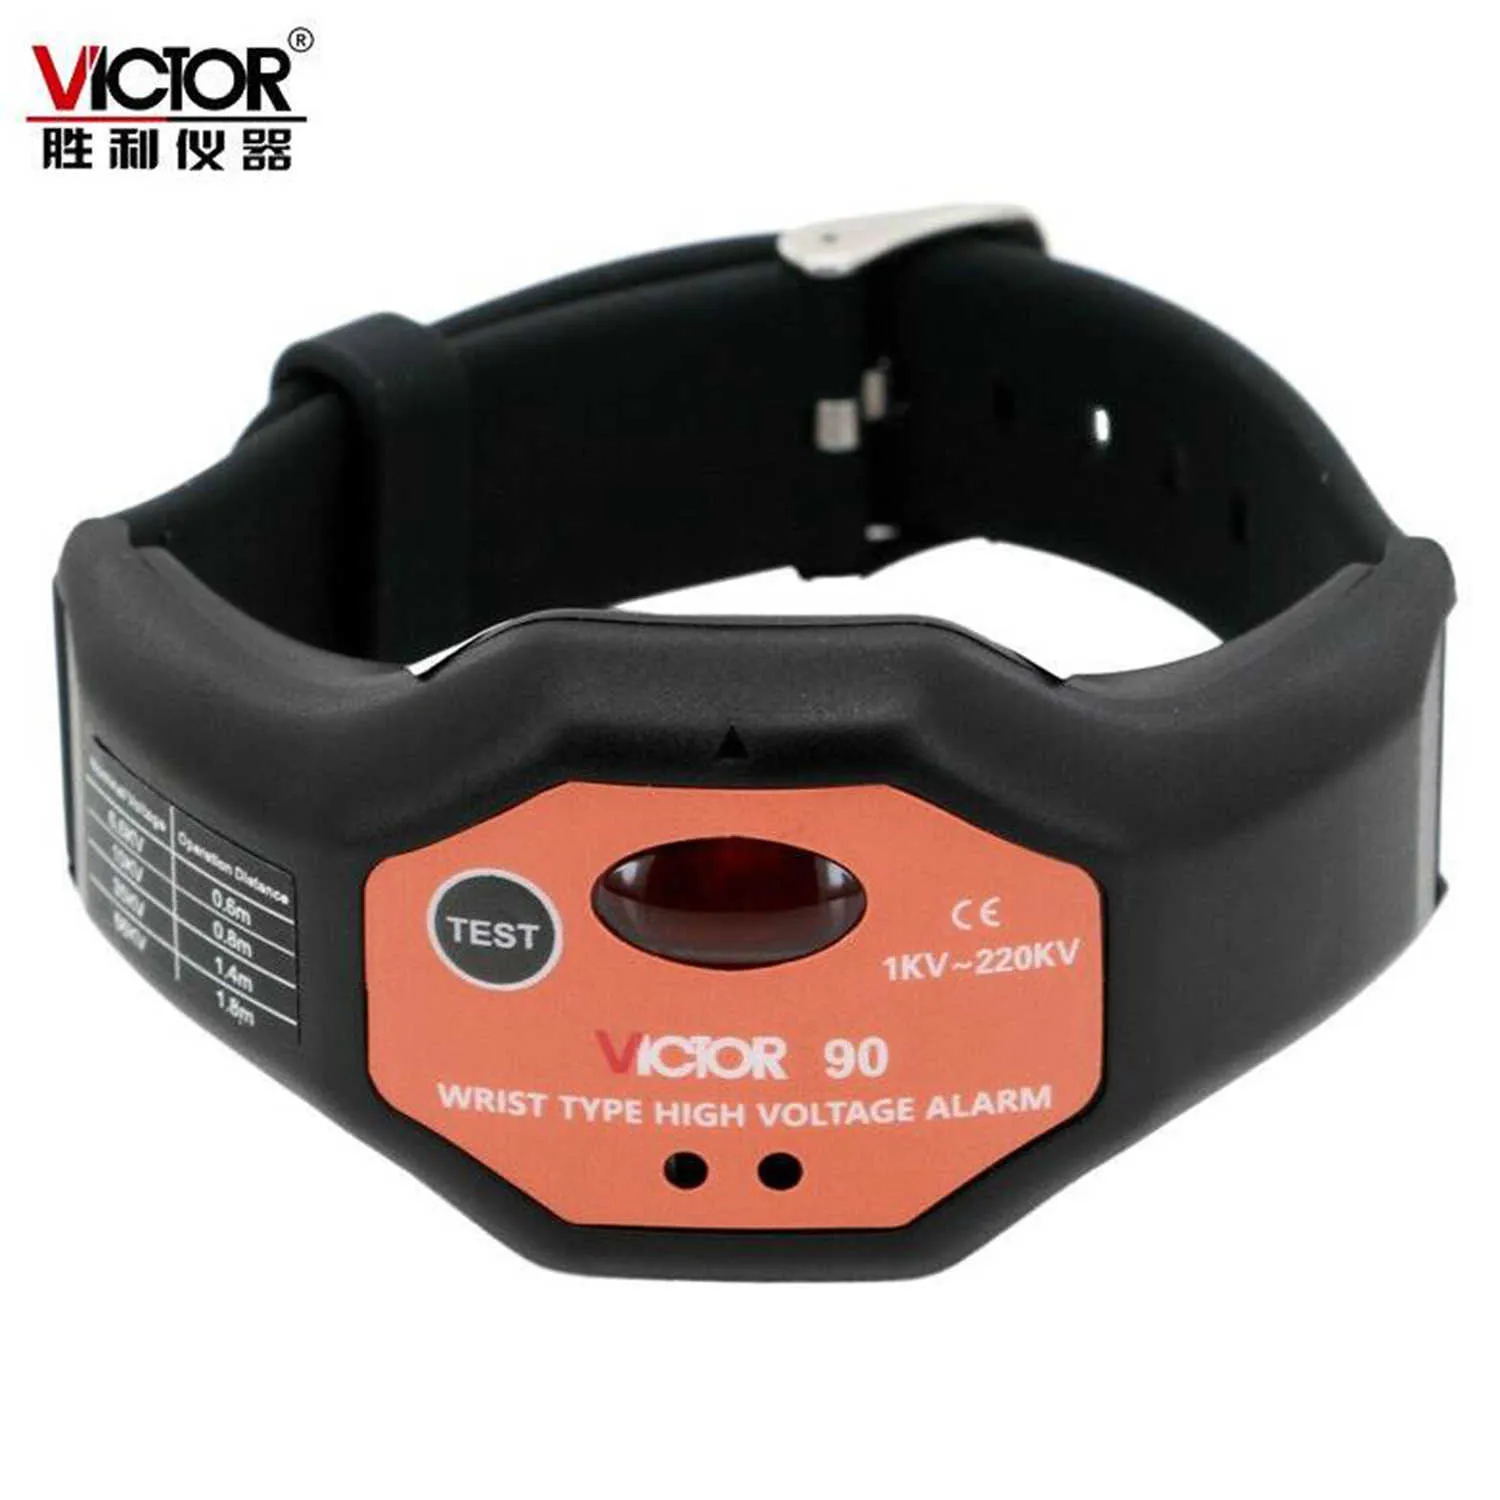 Victor 90 VC90 pols-type hoogspanningsalarm zonder contactinductietechnologie zonder contact.